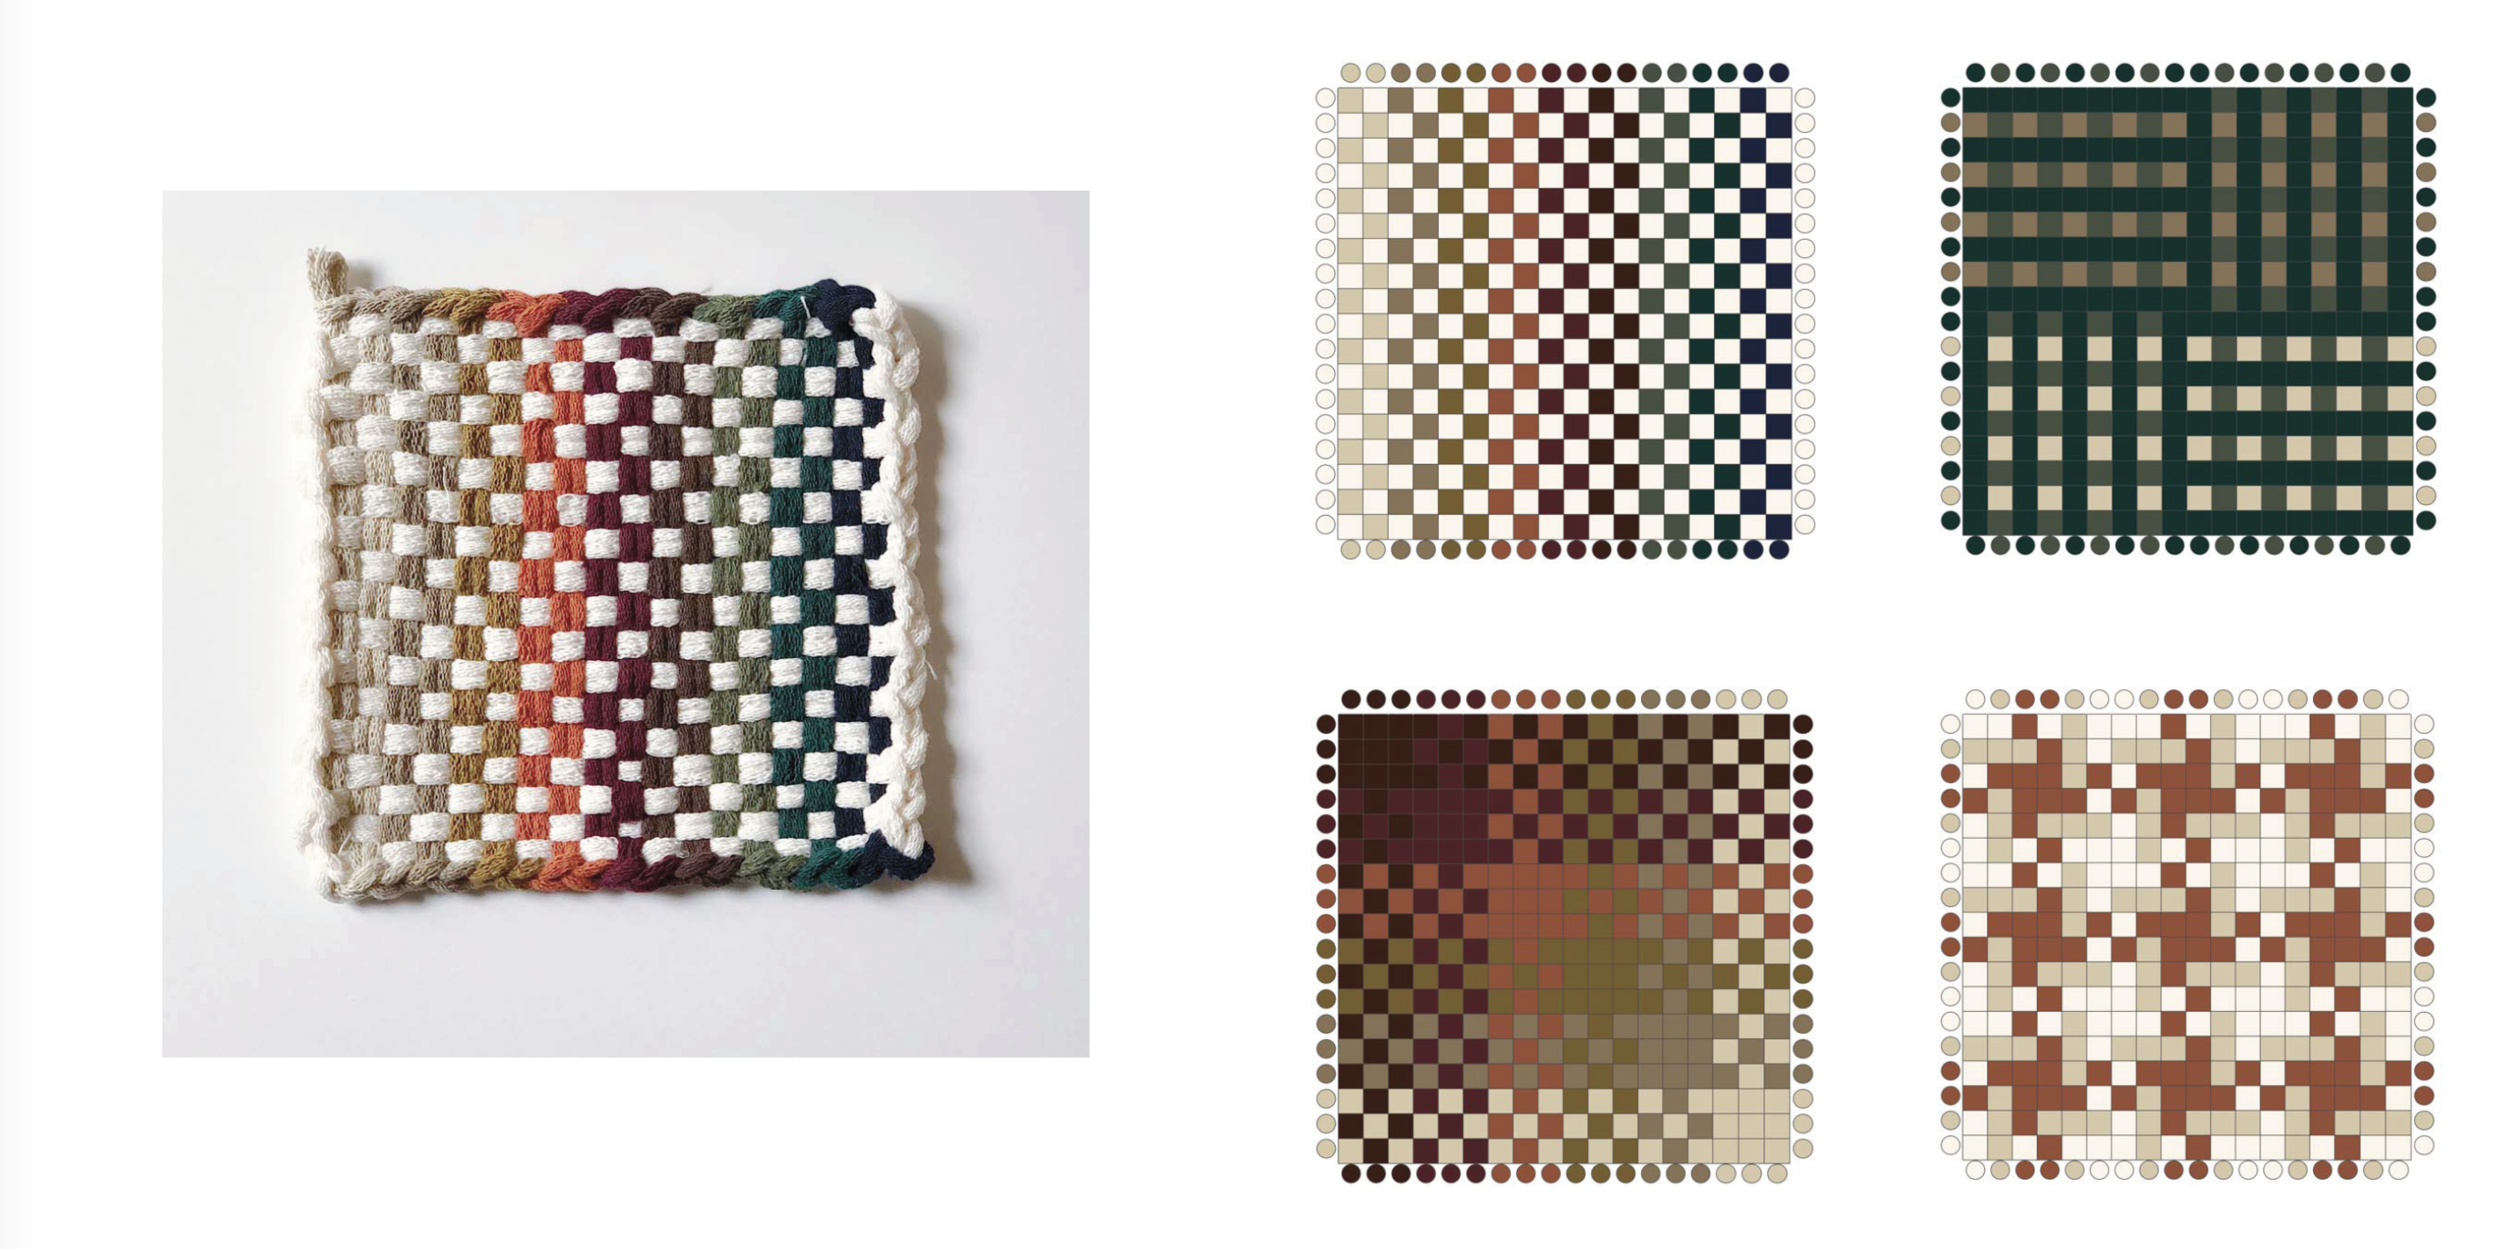 potholder loom designs: 140 colorful patterns — Weaver House